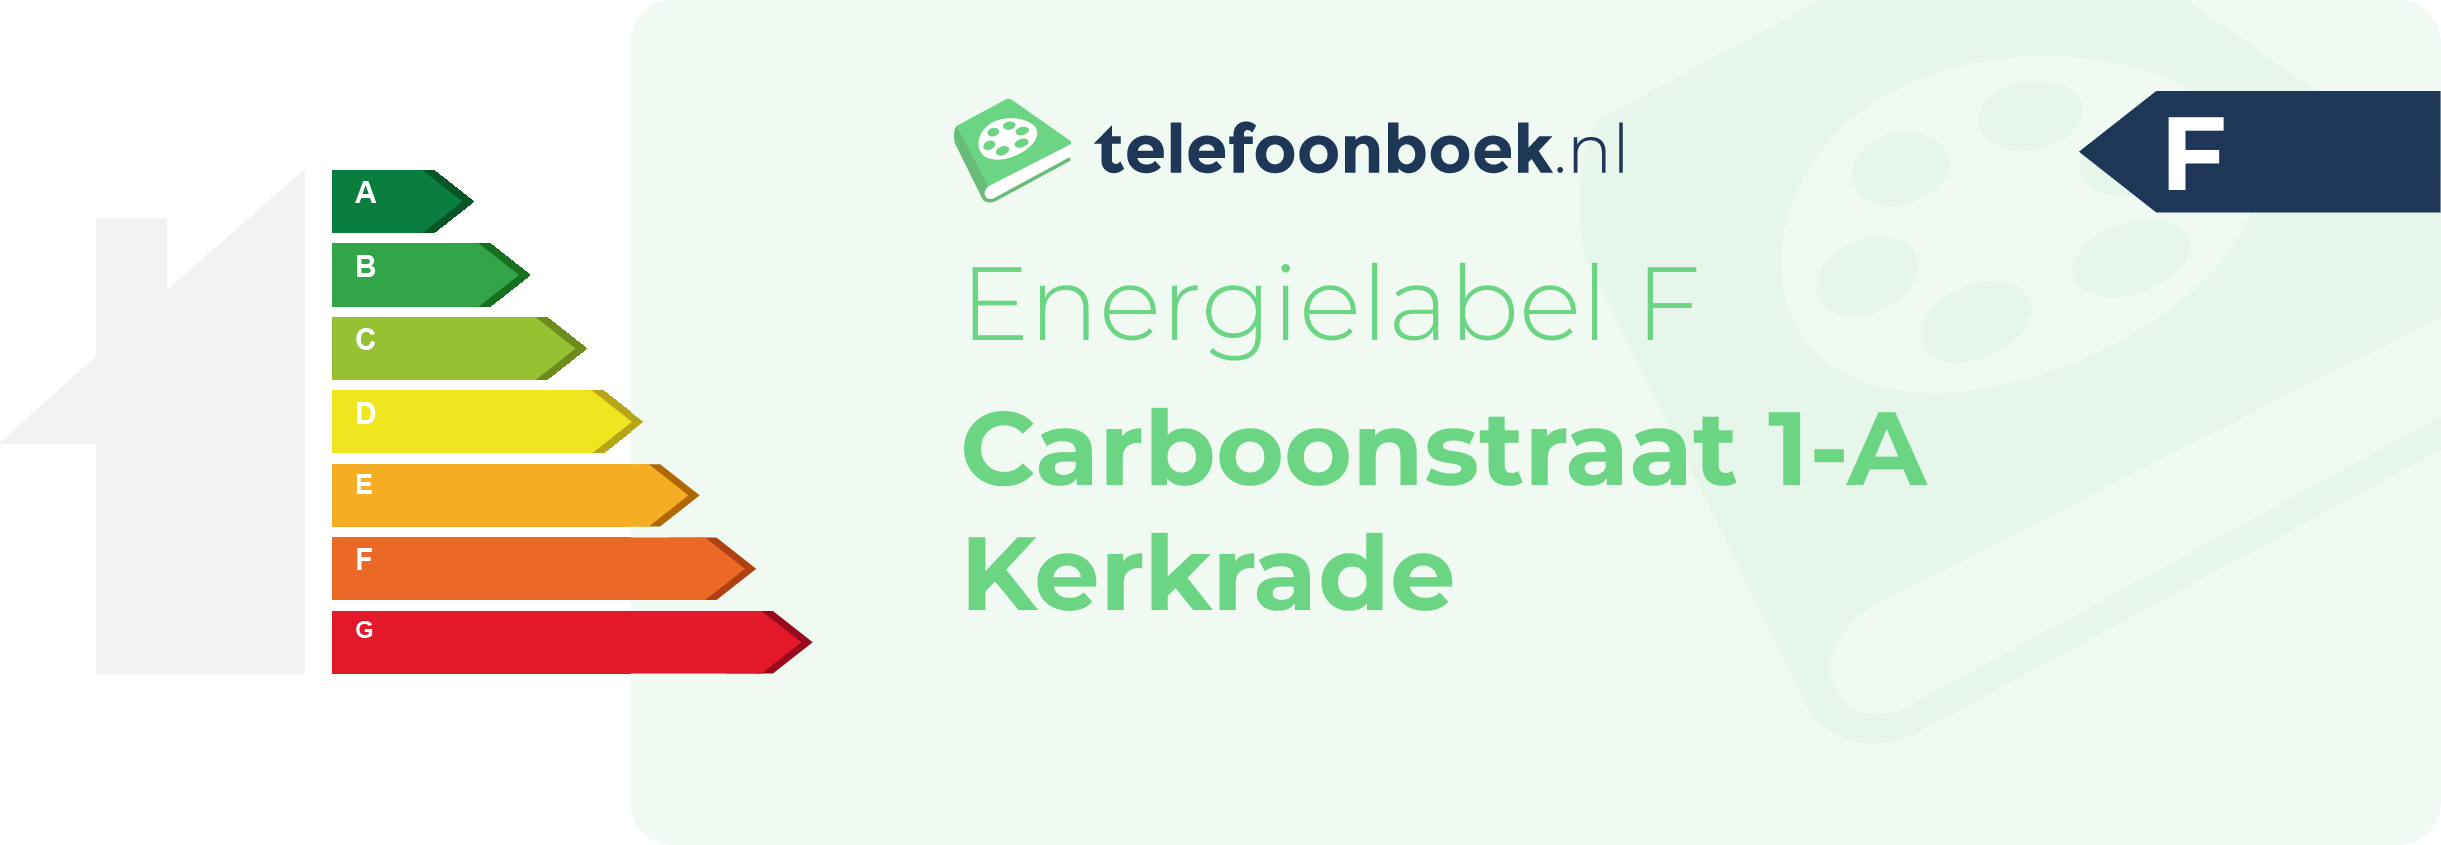 Energielabel Carboonstraat 1-A Kerkrade